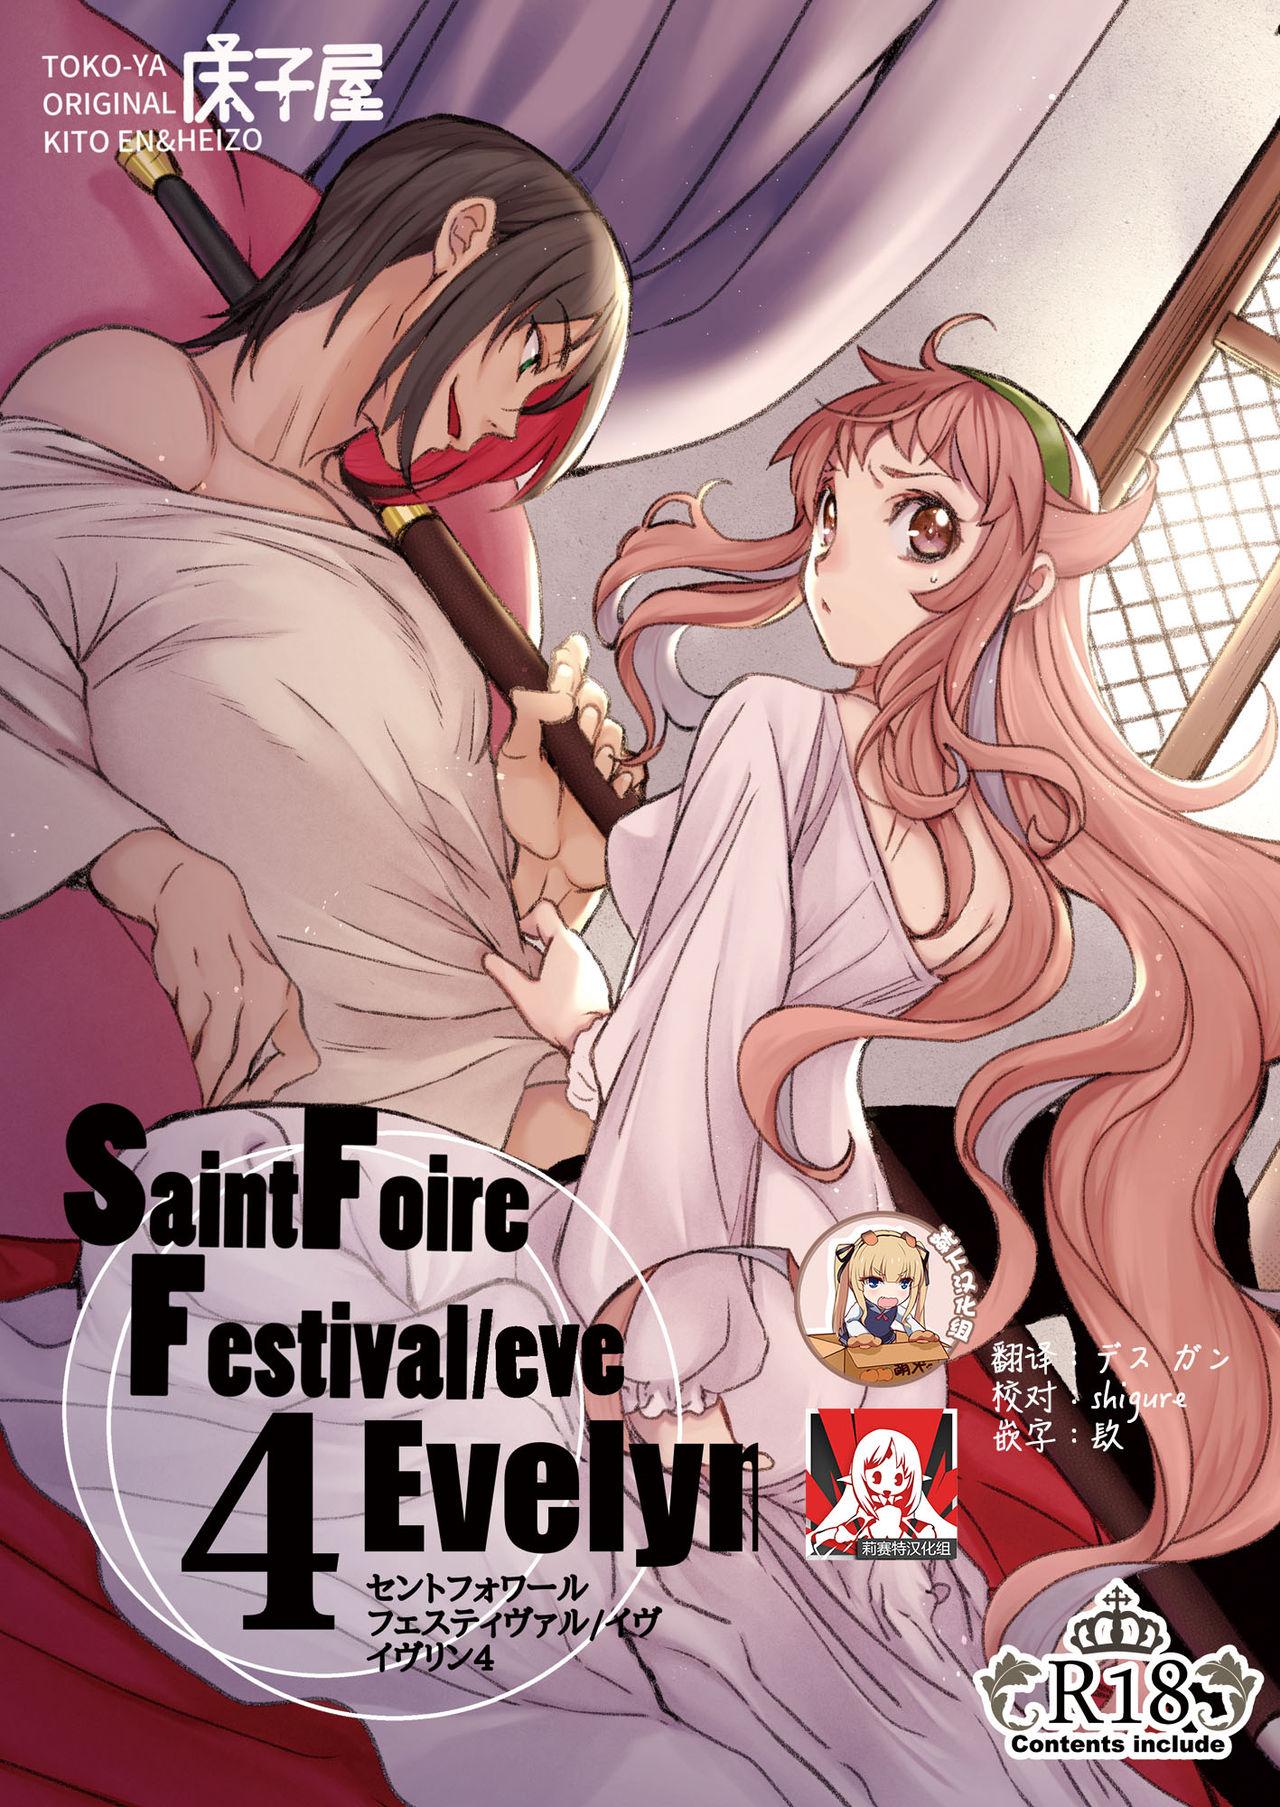 Saint Foire Festival/eve Evelyn:4 0